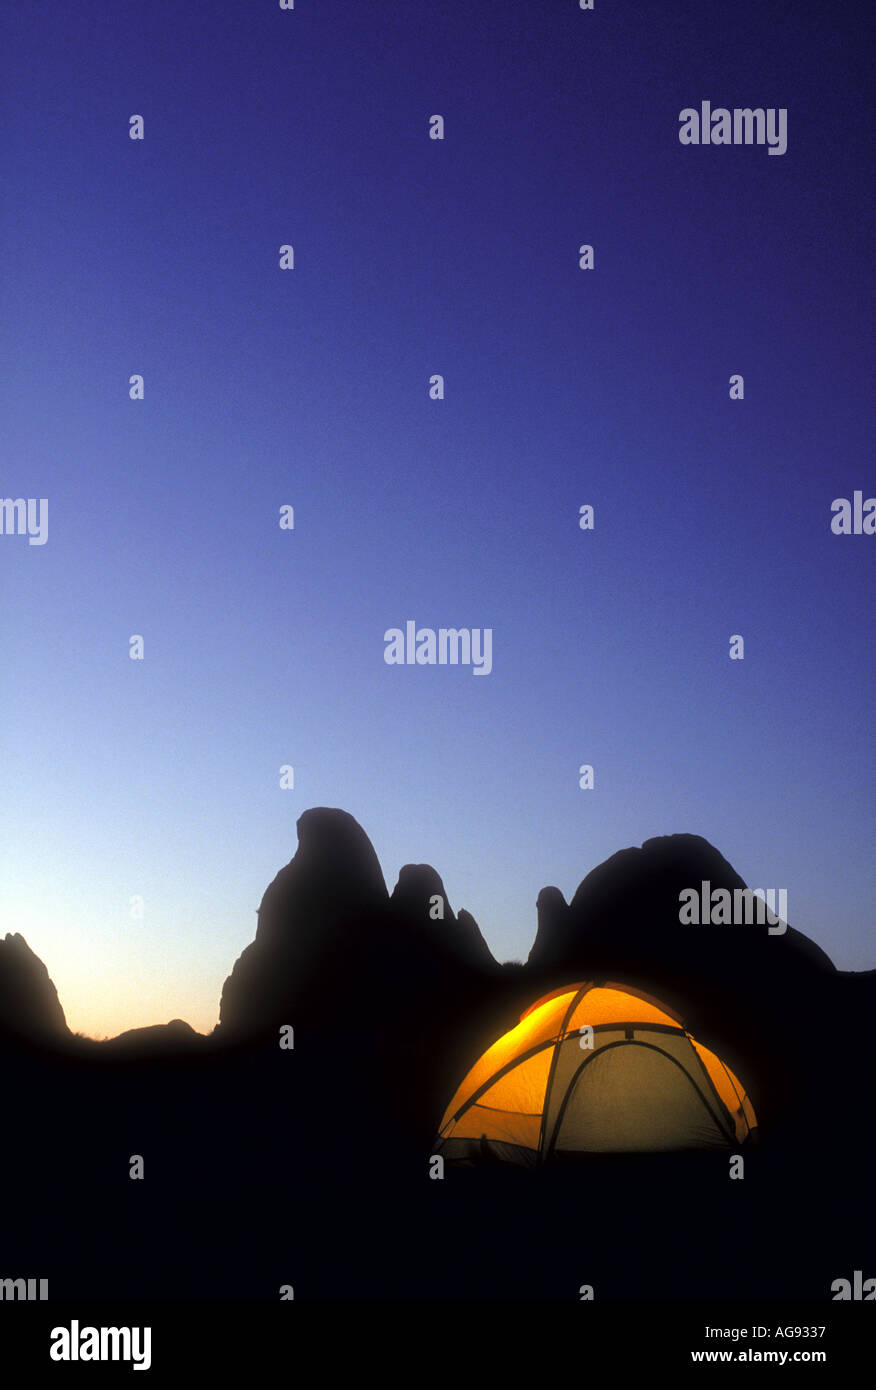 Glühende camping Zelt am frühen Abend mit Berggipfeln im Hintergrund Eigenschaft veröffentlichte Bild Stockfoto